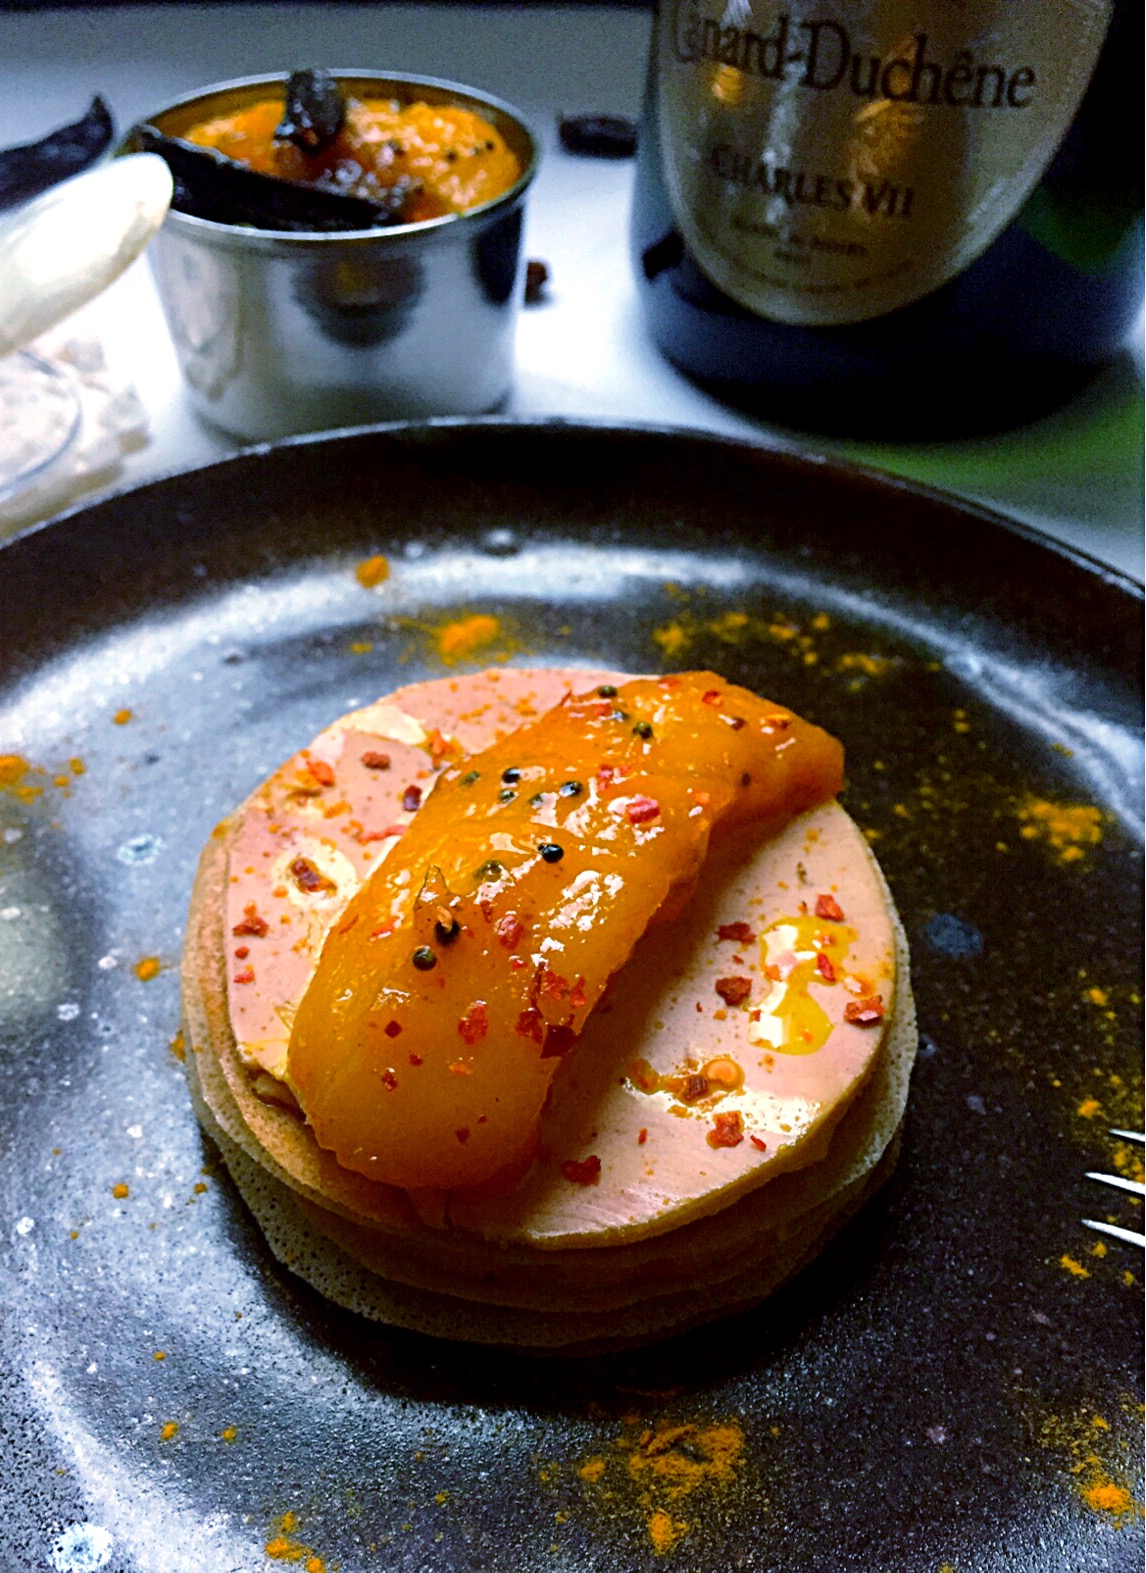 Mille feuille de foie gras